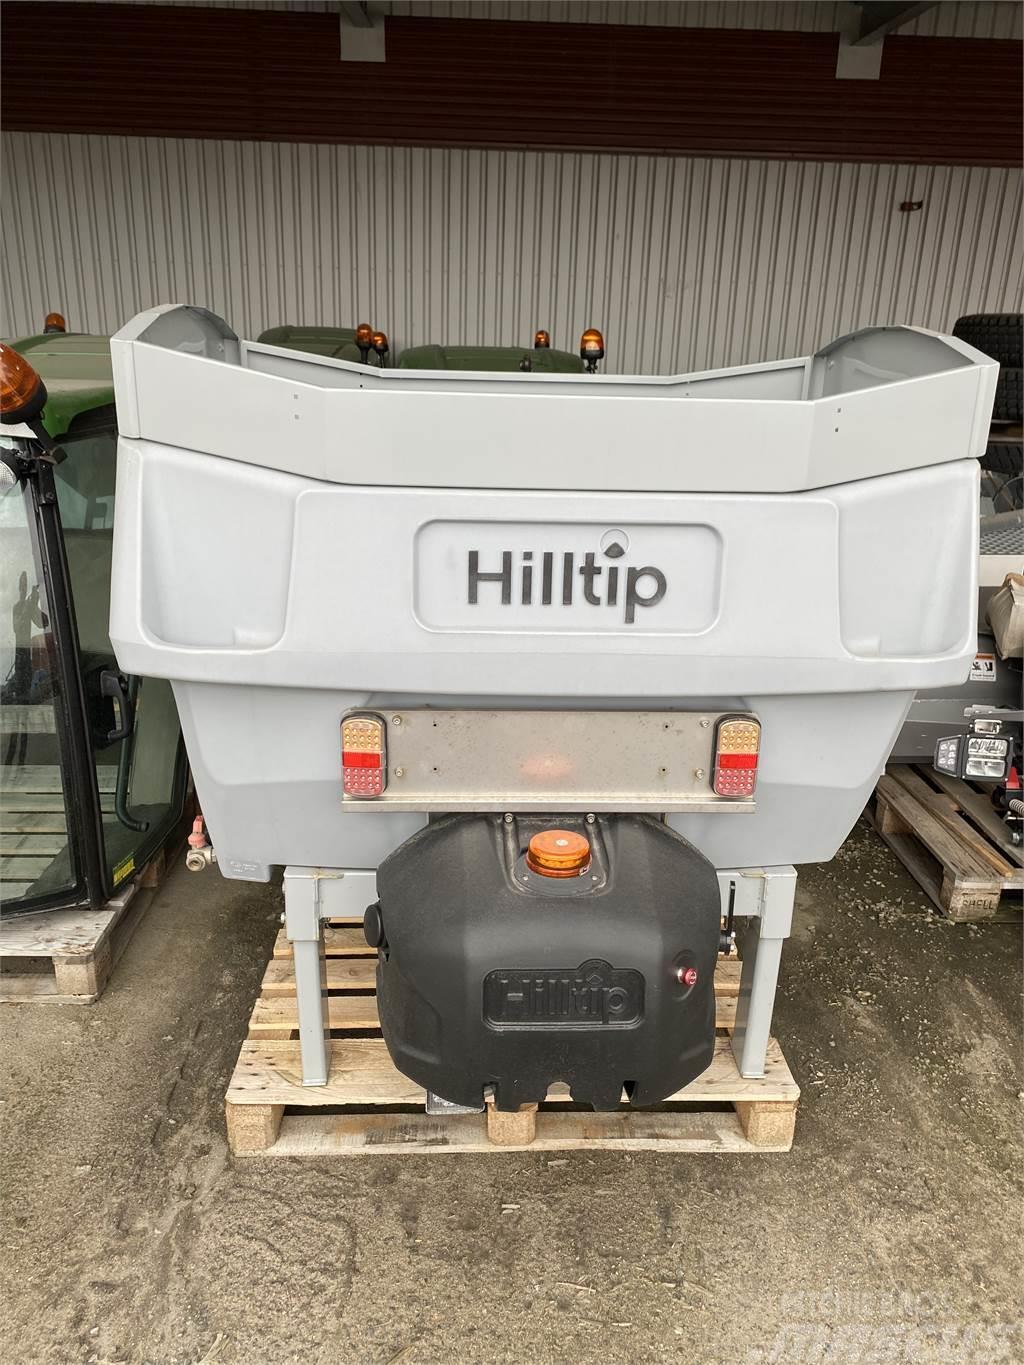 Hilltip 800TR Autres équipements pour route et neige